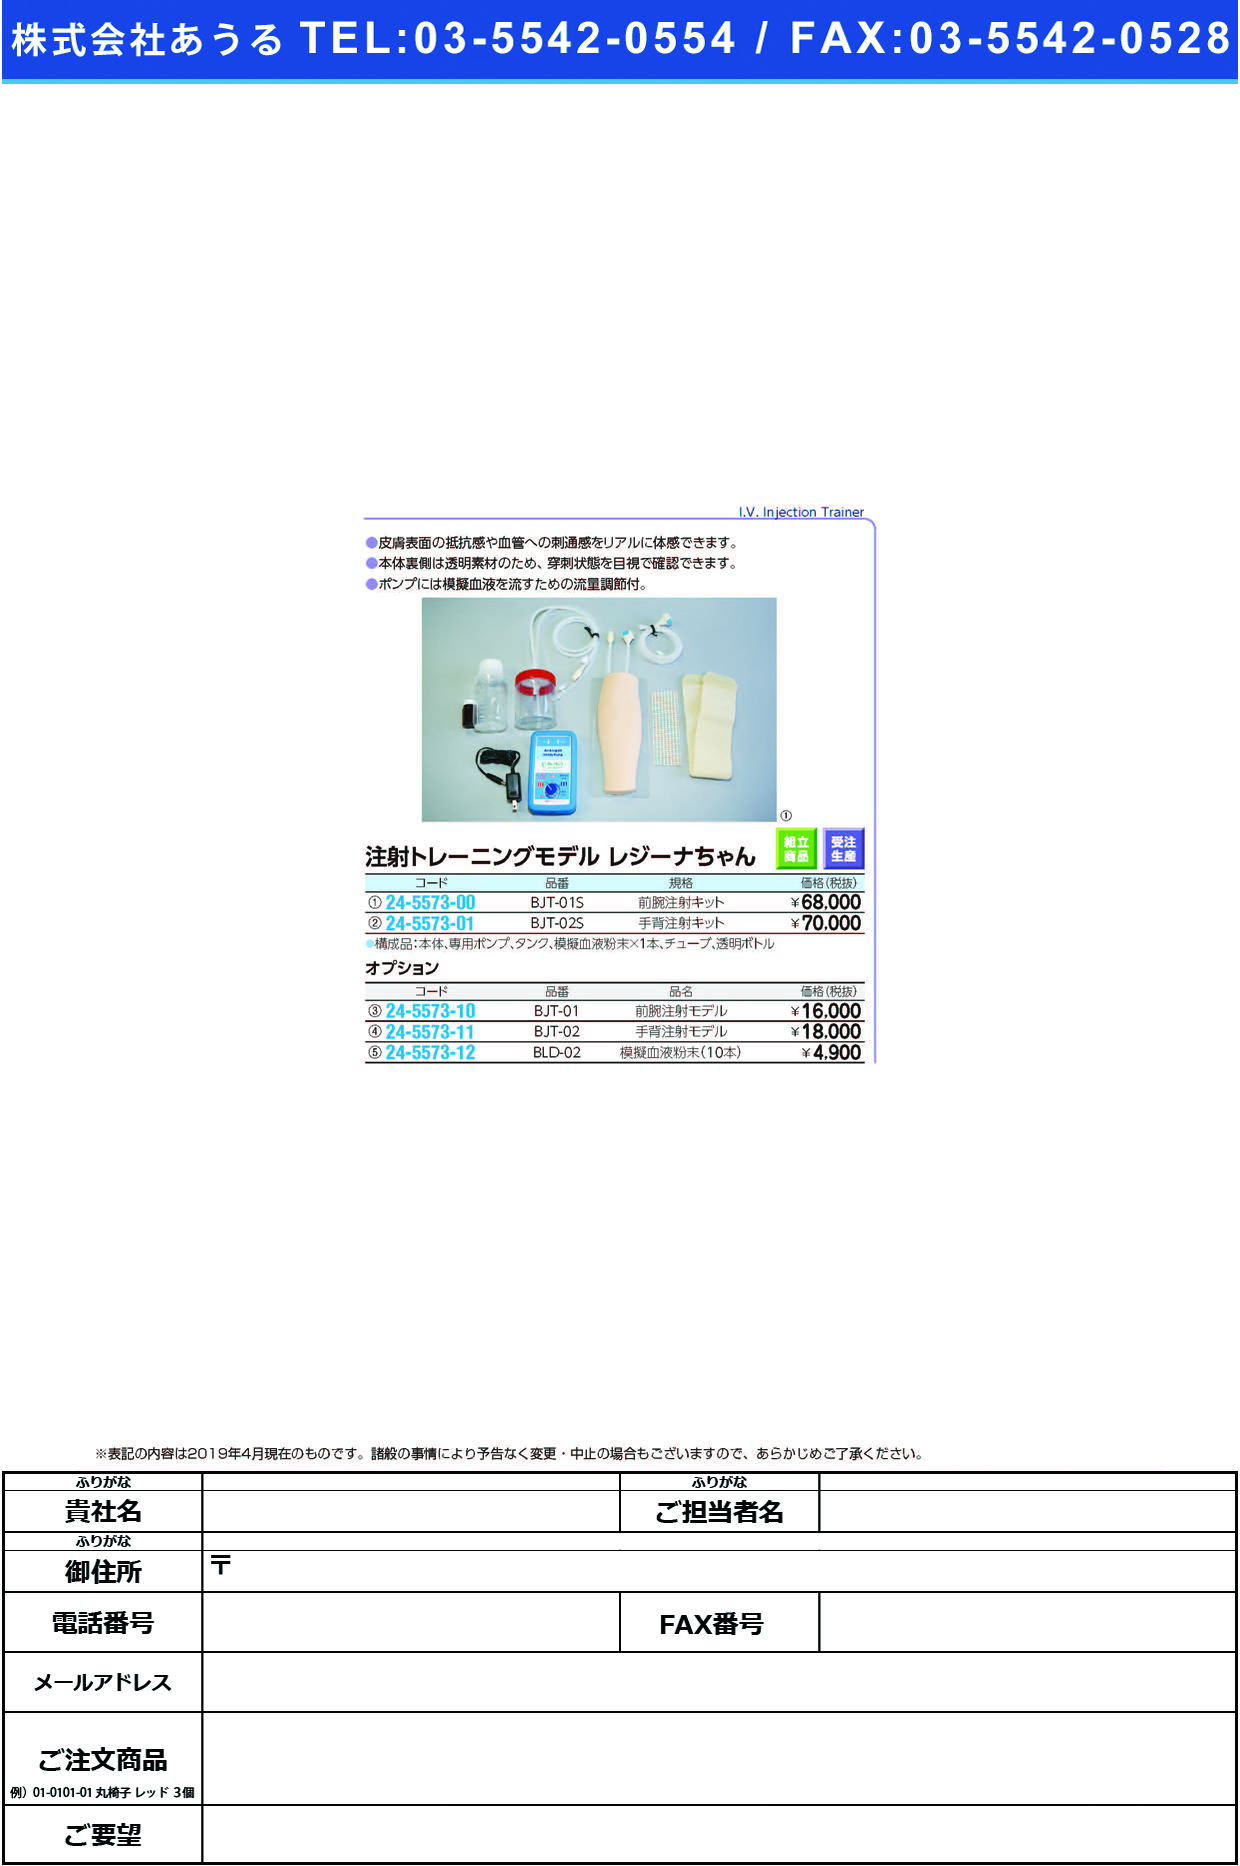 (24-5573-10)前腕注射トレーニングモデル BJT-01 ｾﾞﾝﾜﾝﾁｭｳｼｬﾄﾚｰﾆﾝｸﾞﾓﾃﾞ【1個単位】【2019年カタログ商品】